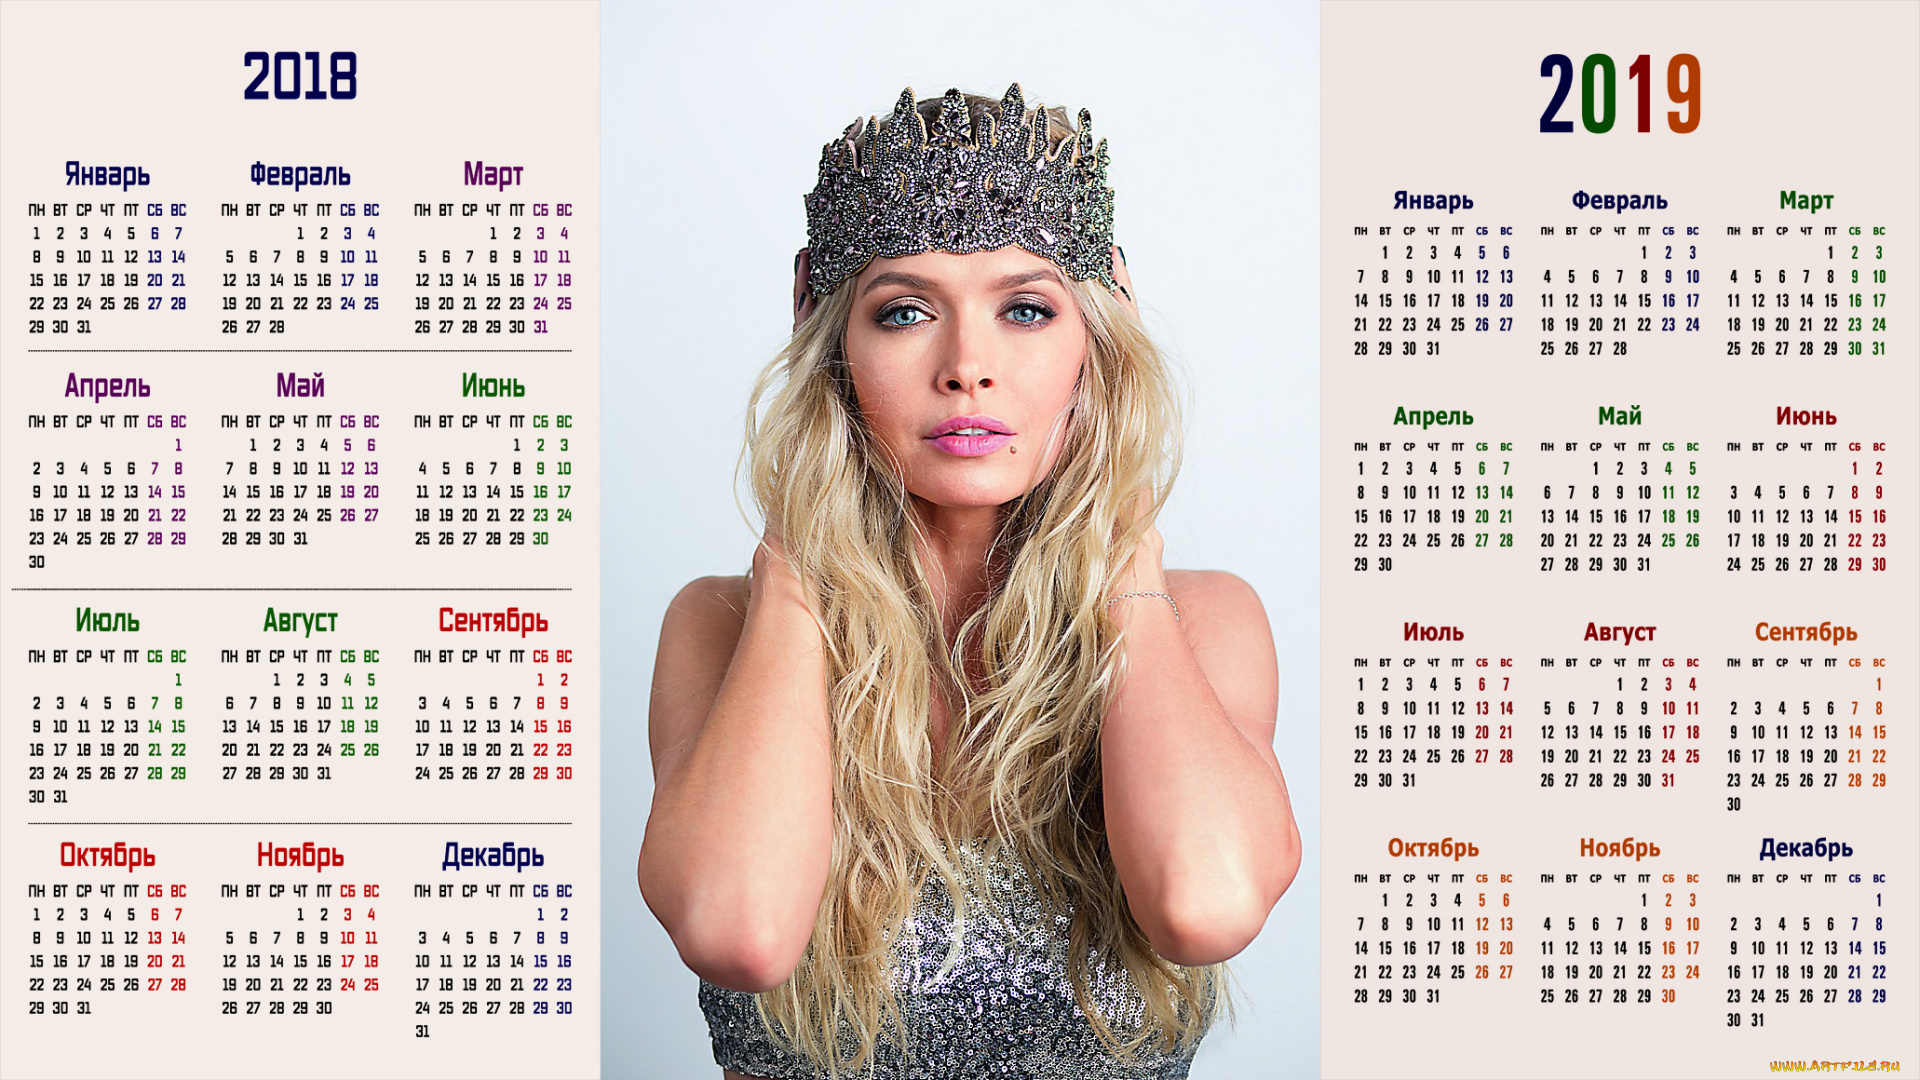 календари, знаменитости, взгляд, женщина, певица